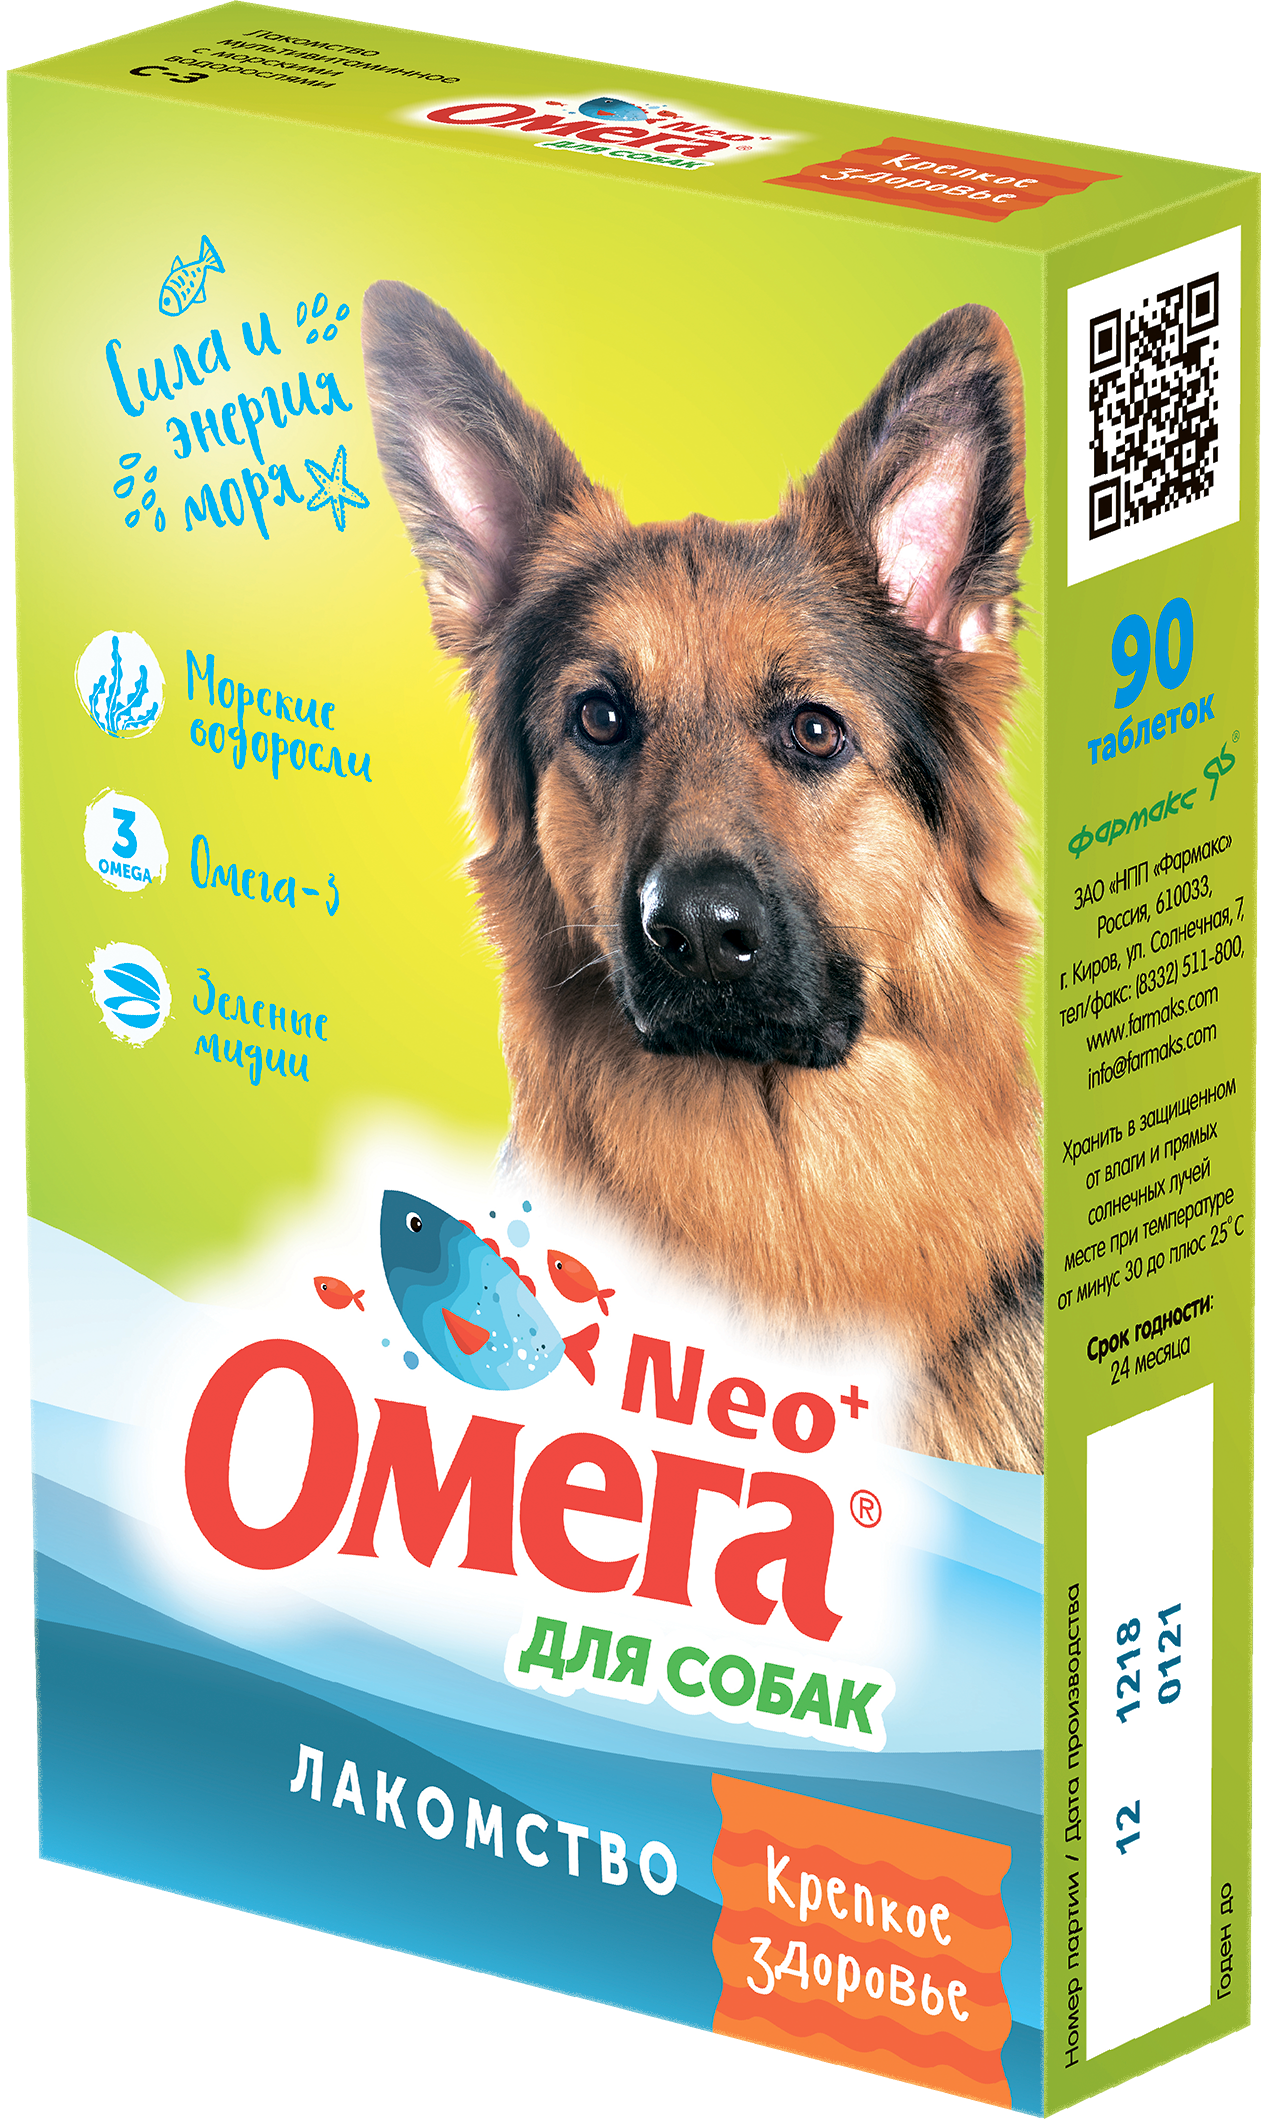 ОМЕГА NEO+ Витамины Крепкое Здоровье для собак 90шт фото, цены, купить